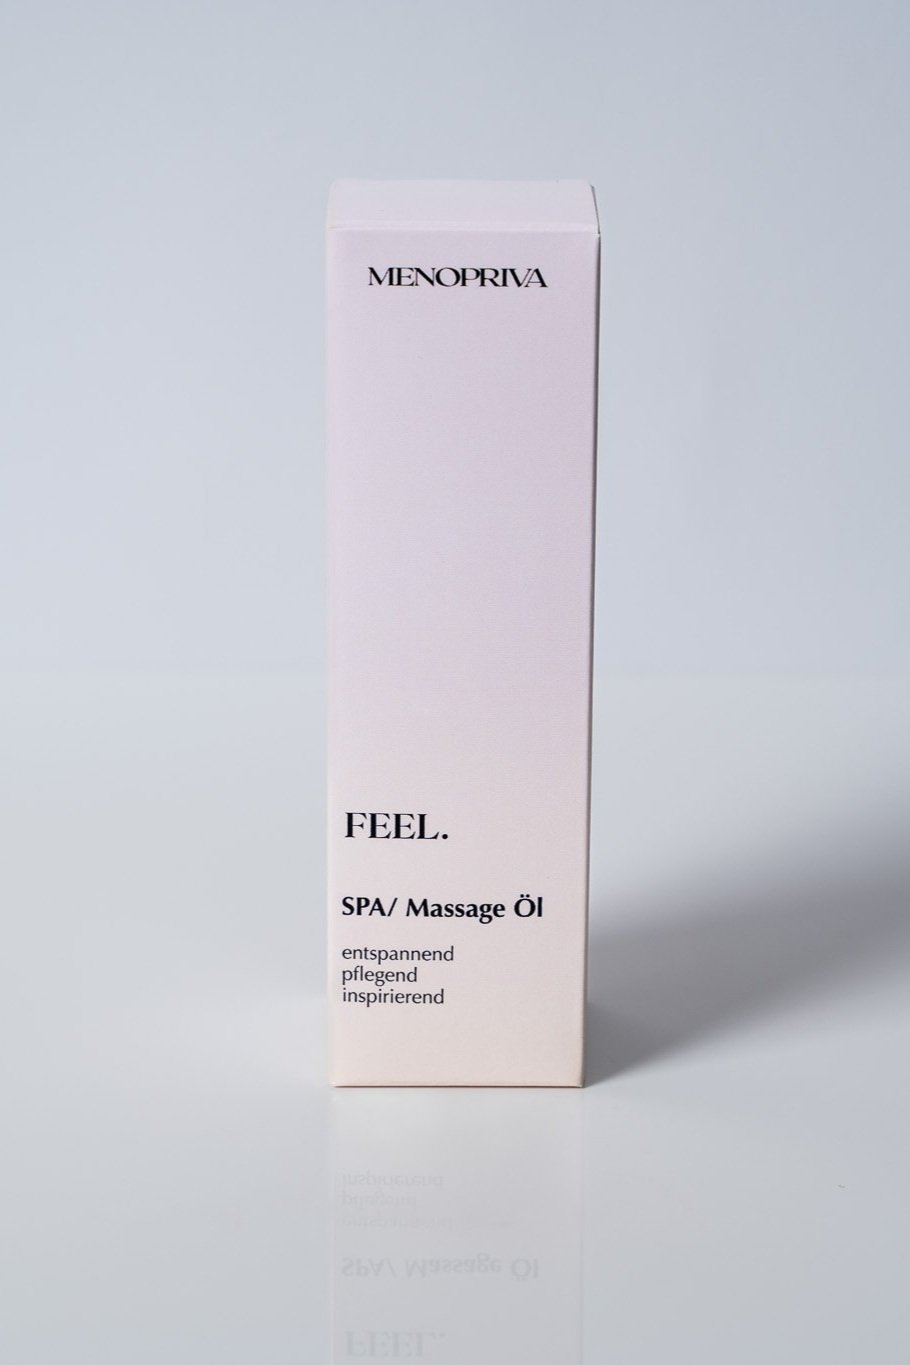 FEEL. massage oil from Menopriva